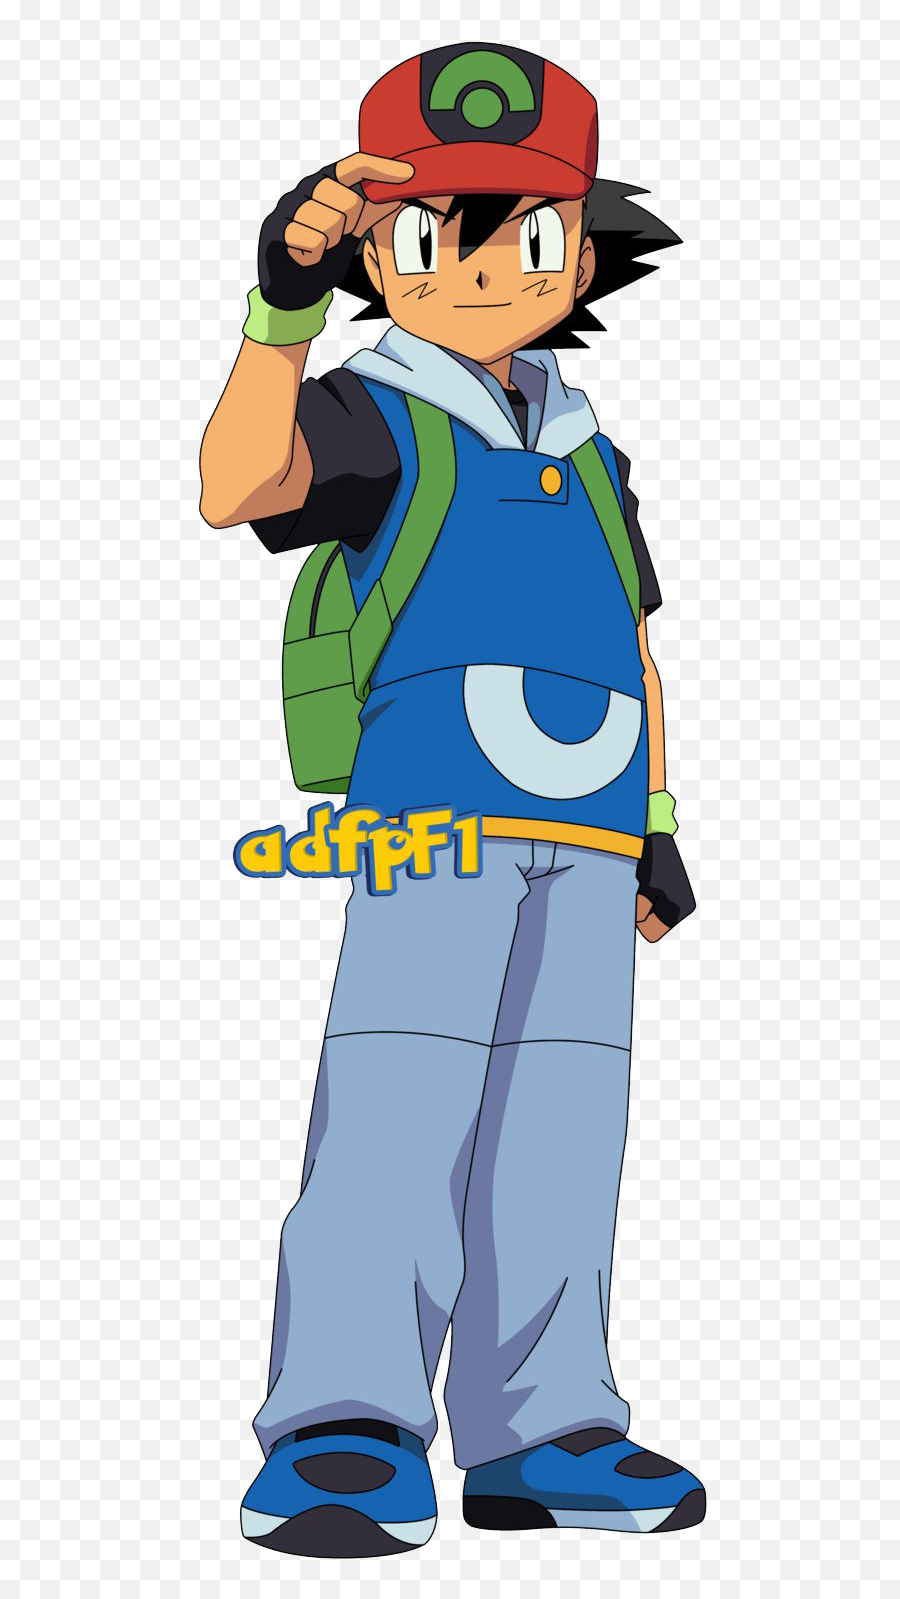 Pokemon Ash Ketchum Png Clipart - Ash Ketchum Transparent,Ash Ketchum Png